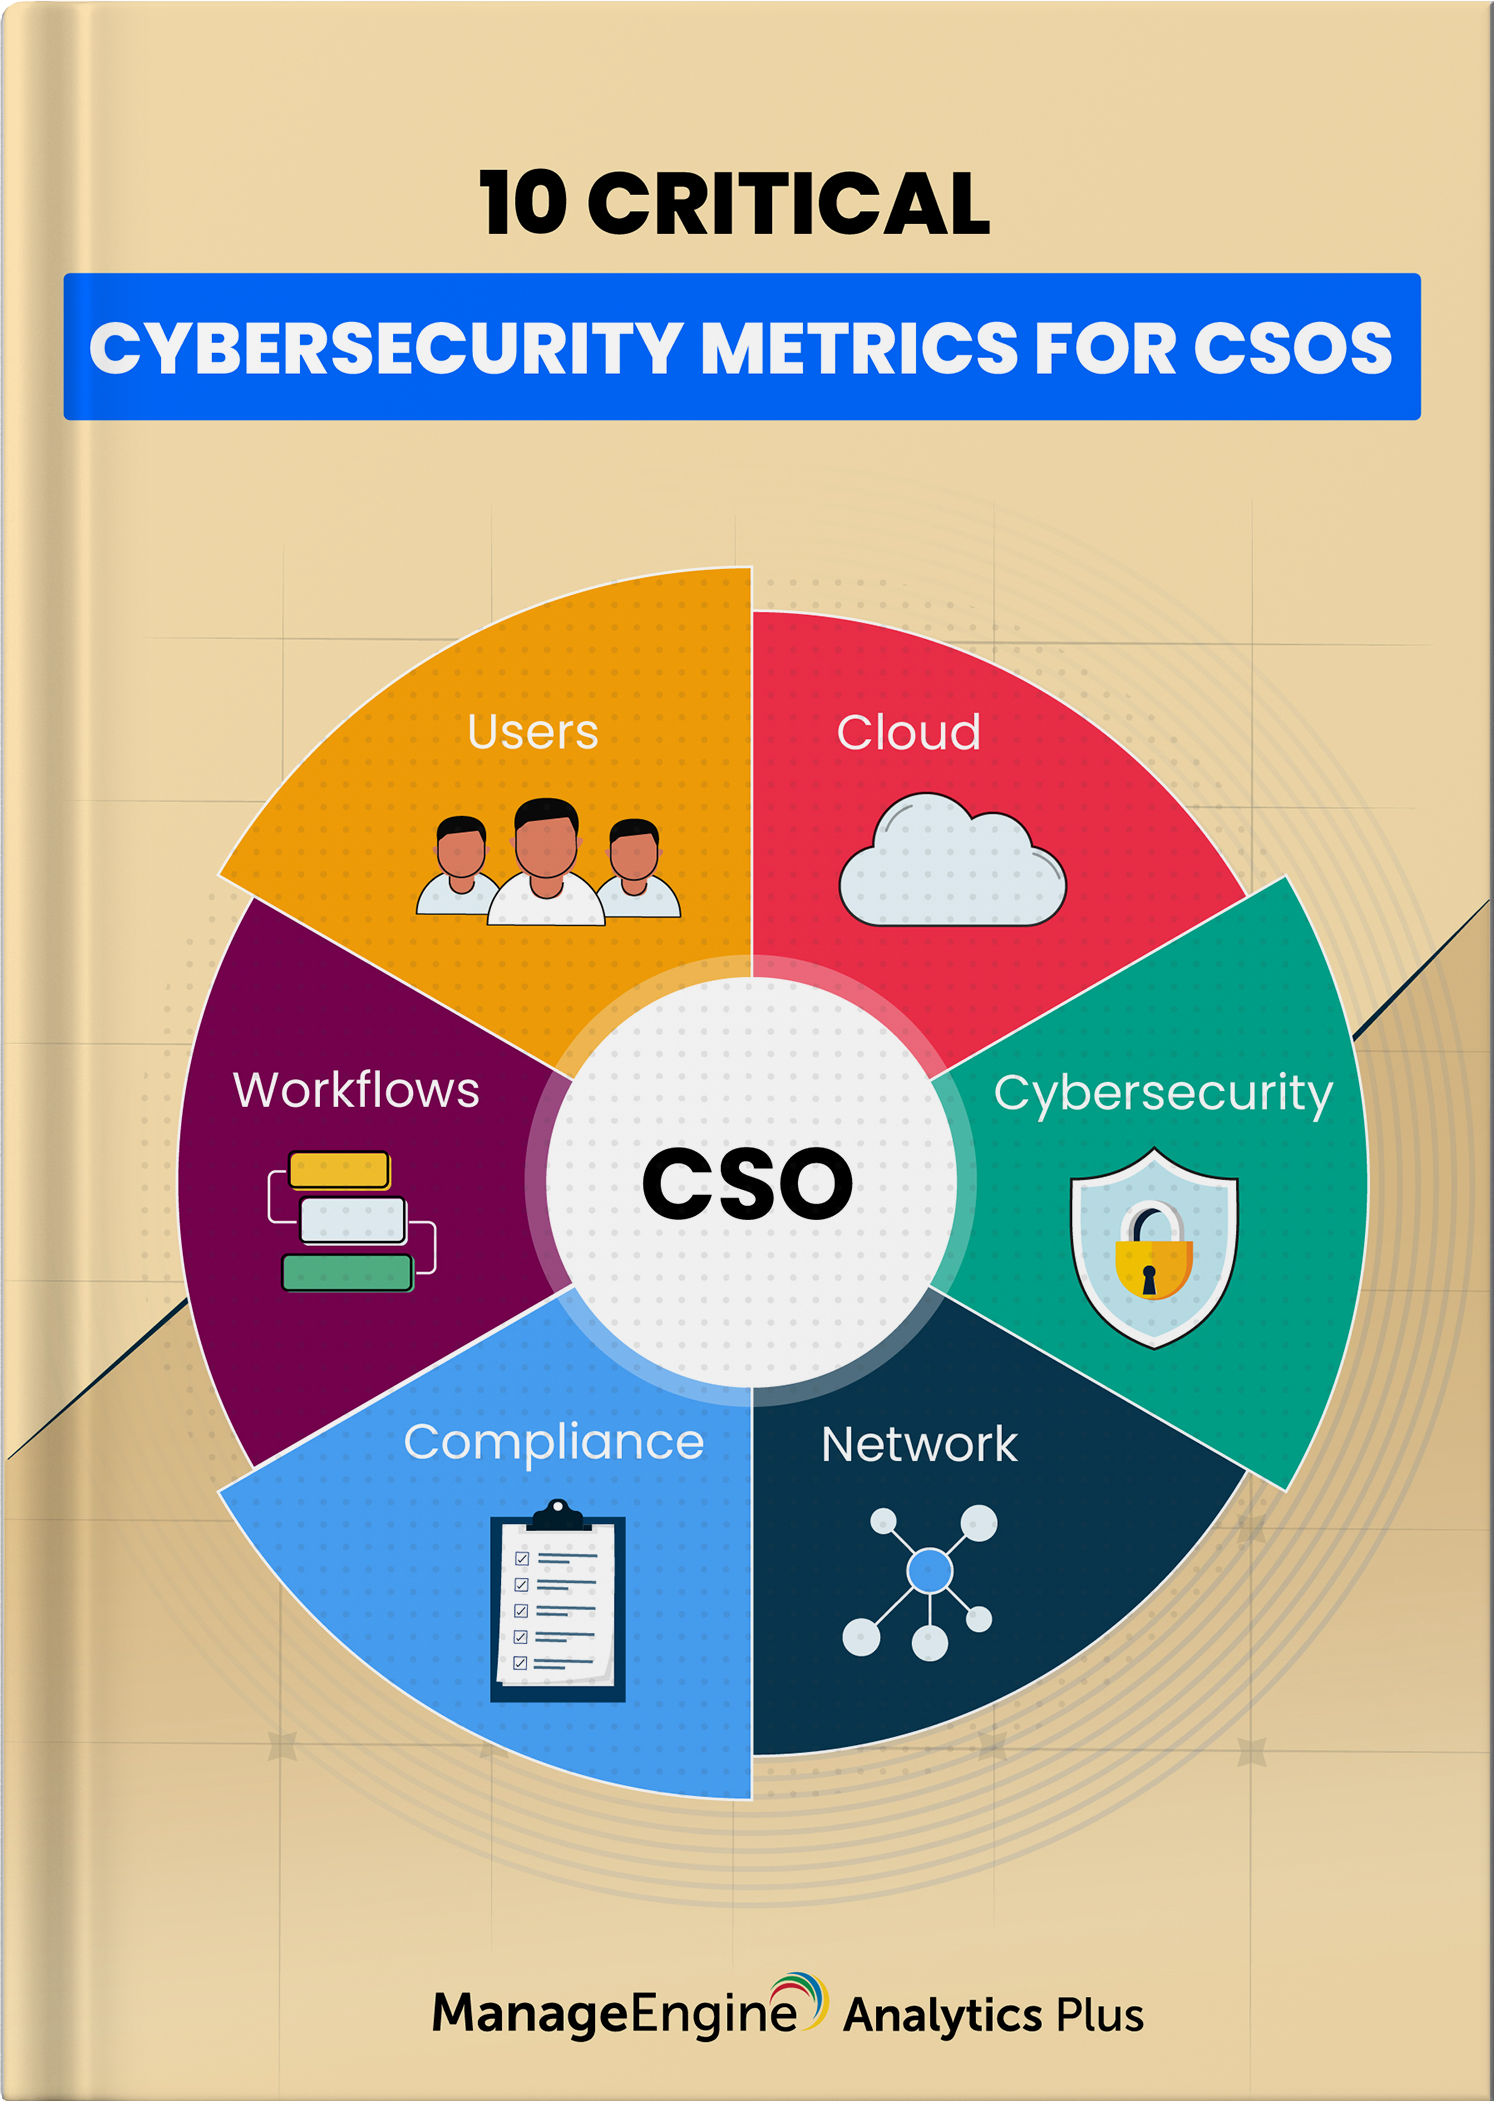 10 mesures que les OSC peuvent exploiter pour mettre en place des mécanismes de cyberdéfense efficaces